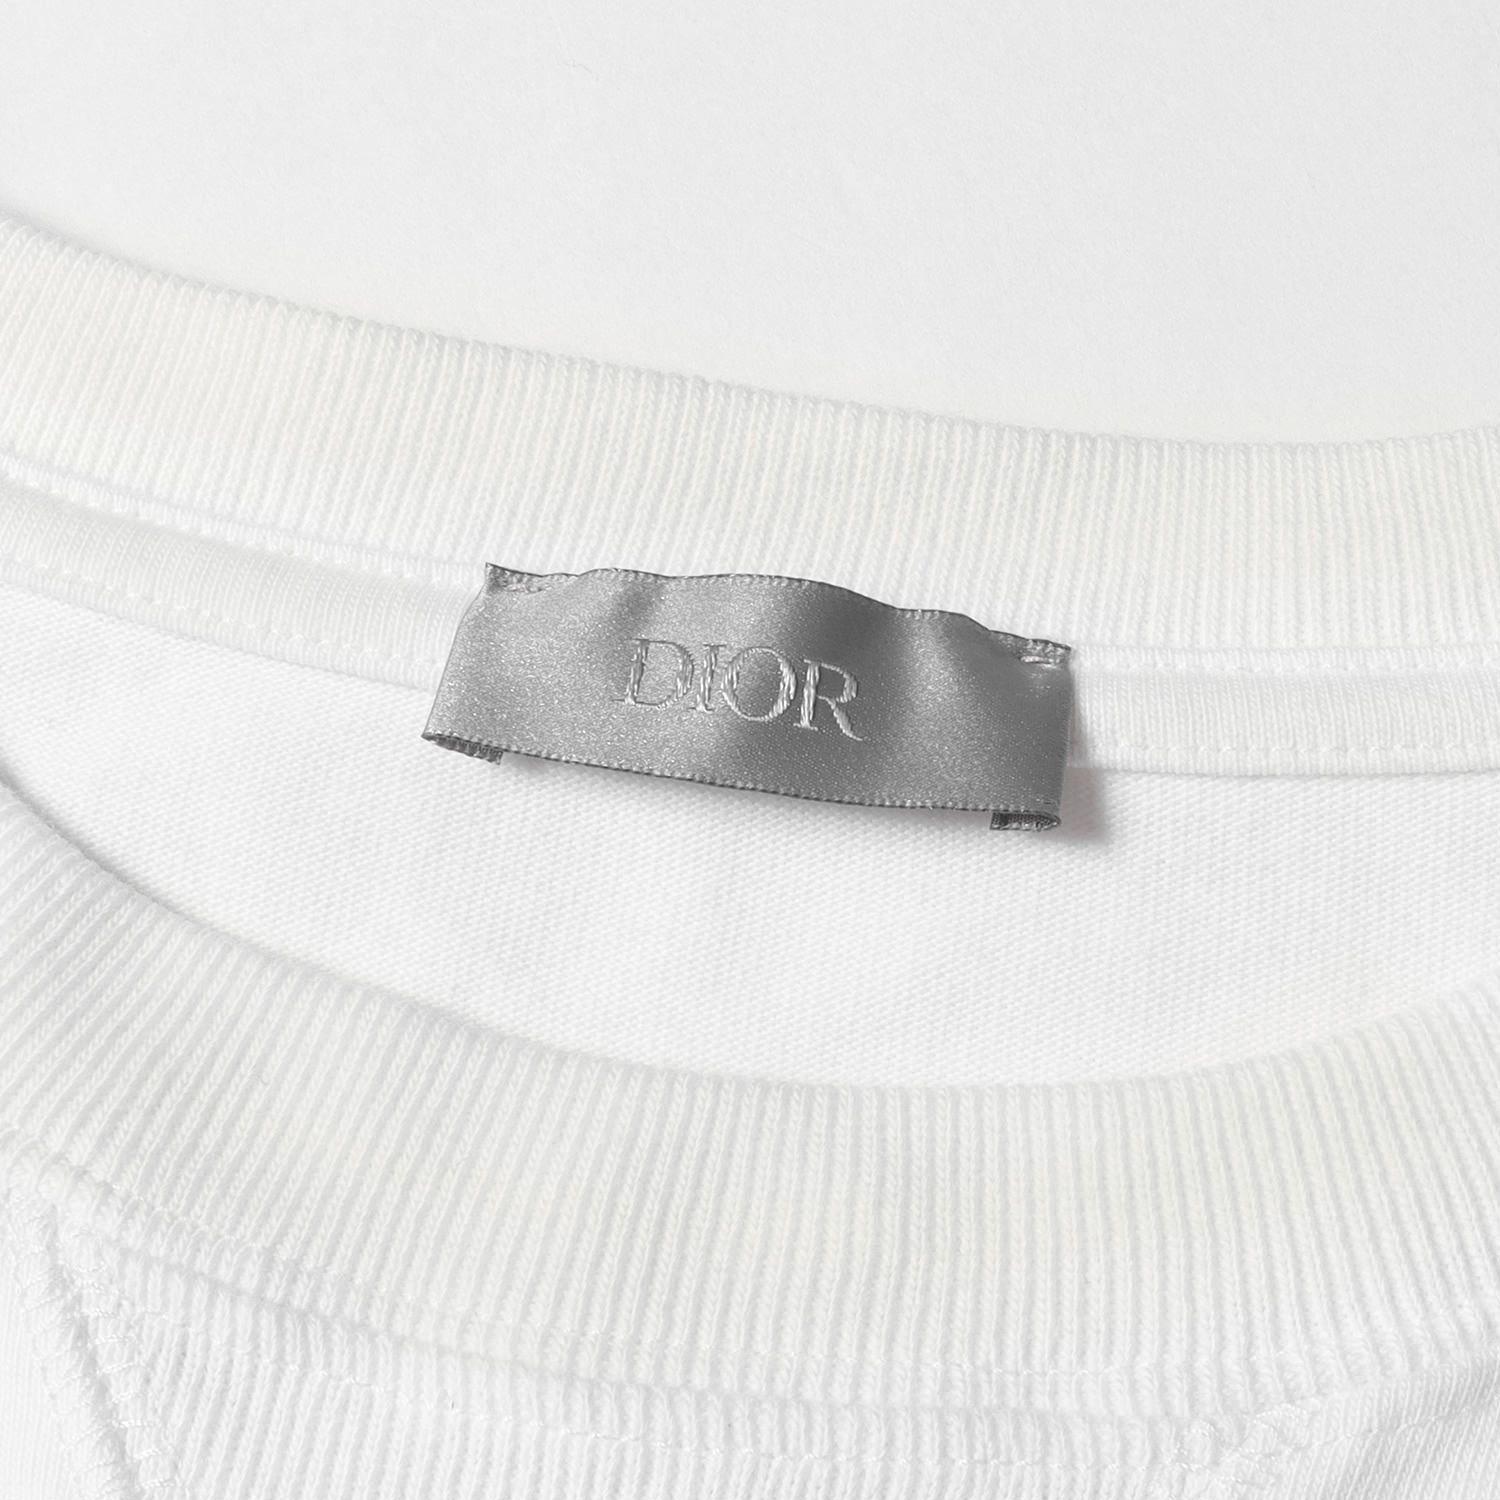 Dior HOMME ディオールオム Tシャツ サイズ:L 21SS フローラルロゴ 刺繍 クルーネック 半袖 Tシャツ 113J686A0554  ホワイト 白 イタリア製 ブランド トップス カットソー